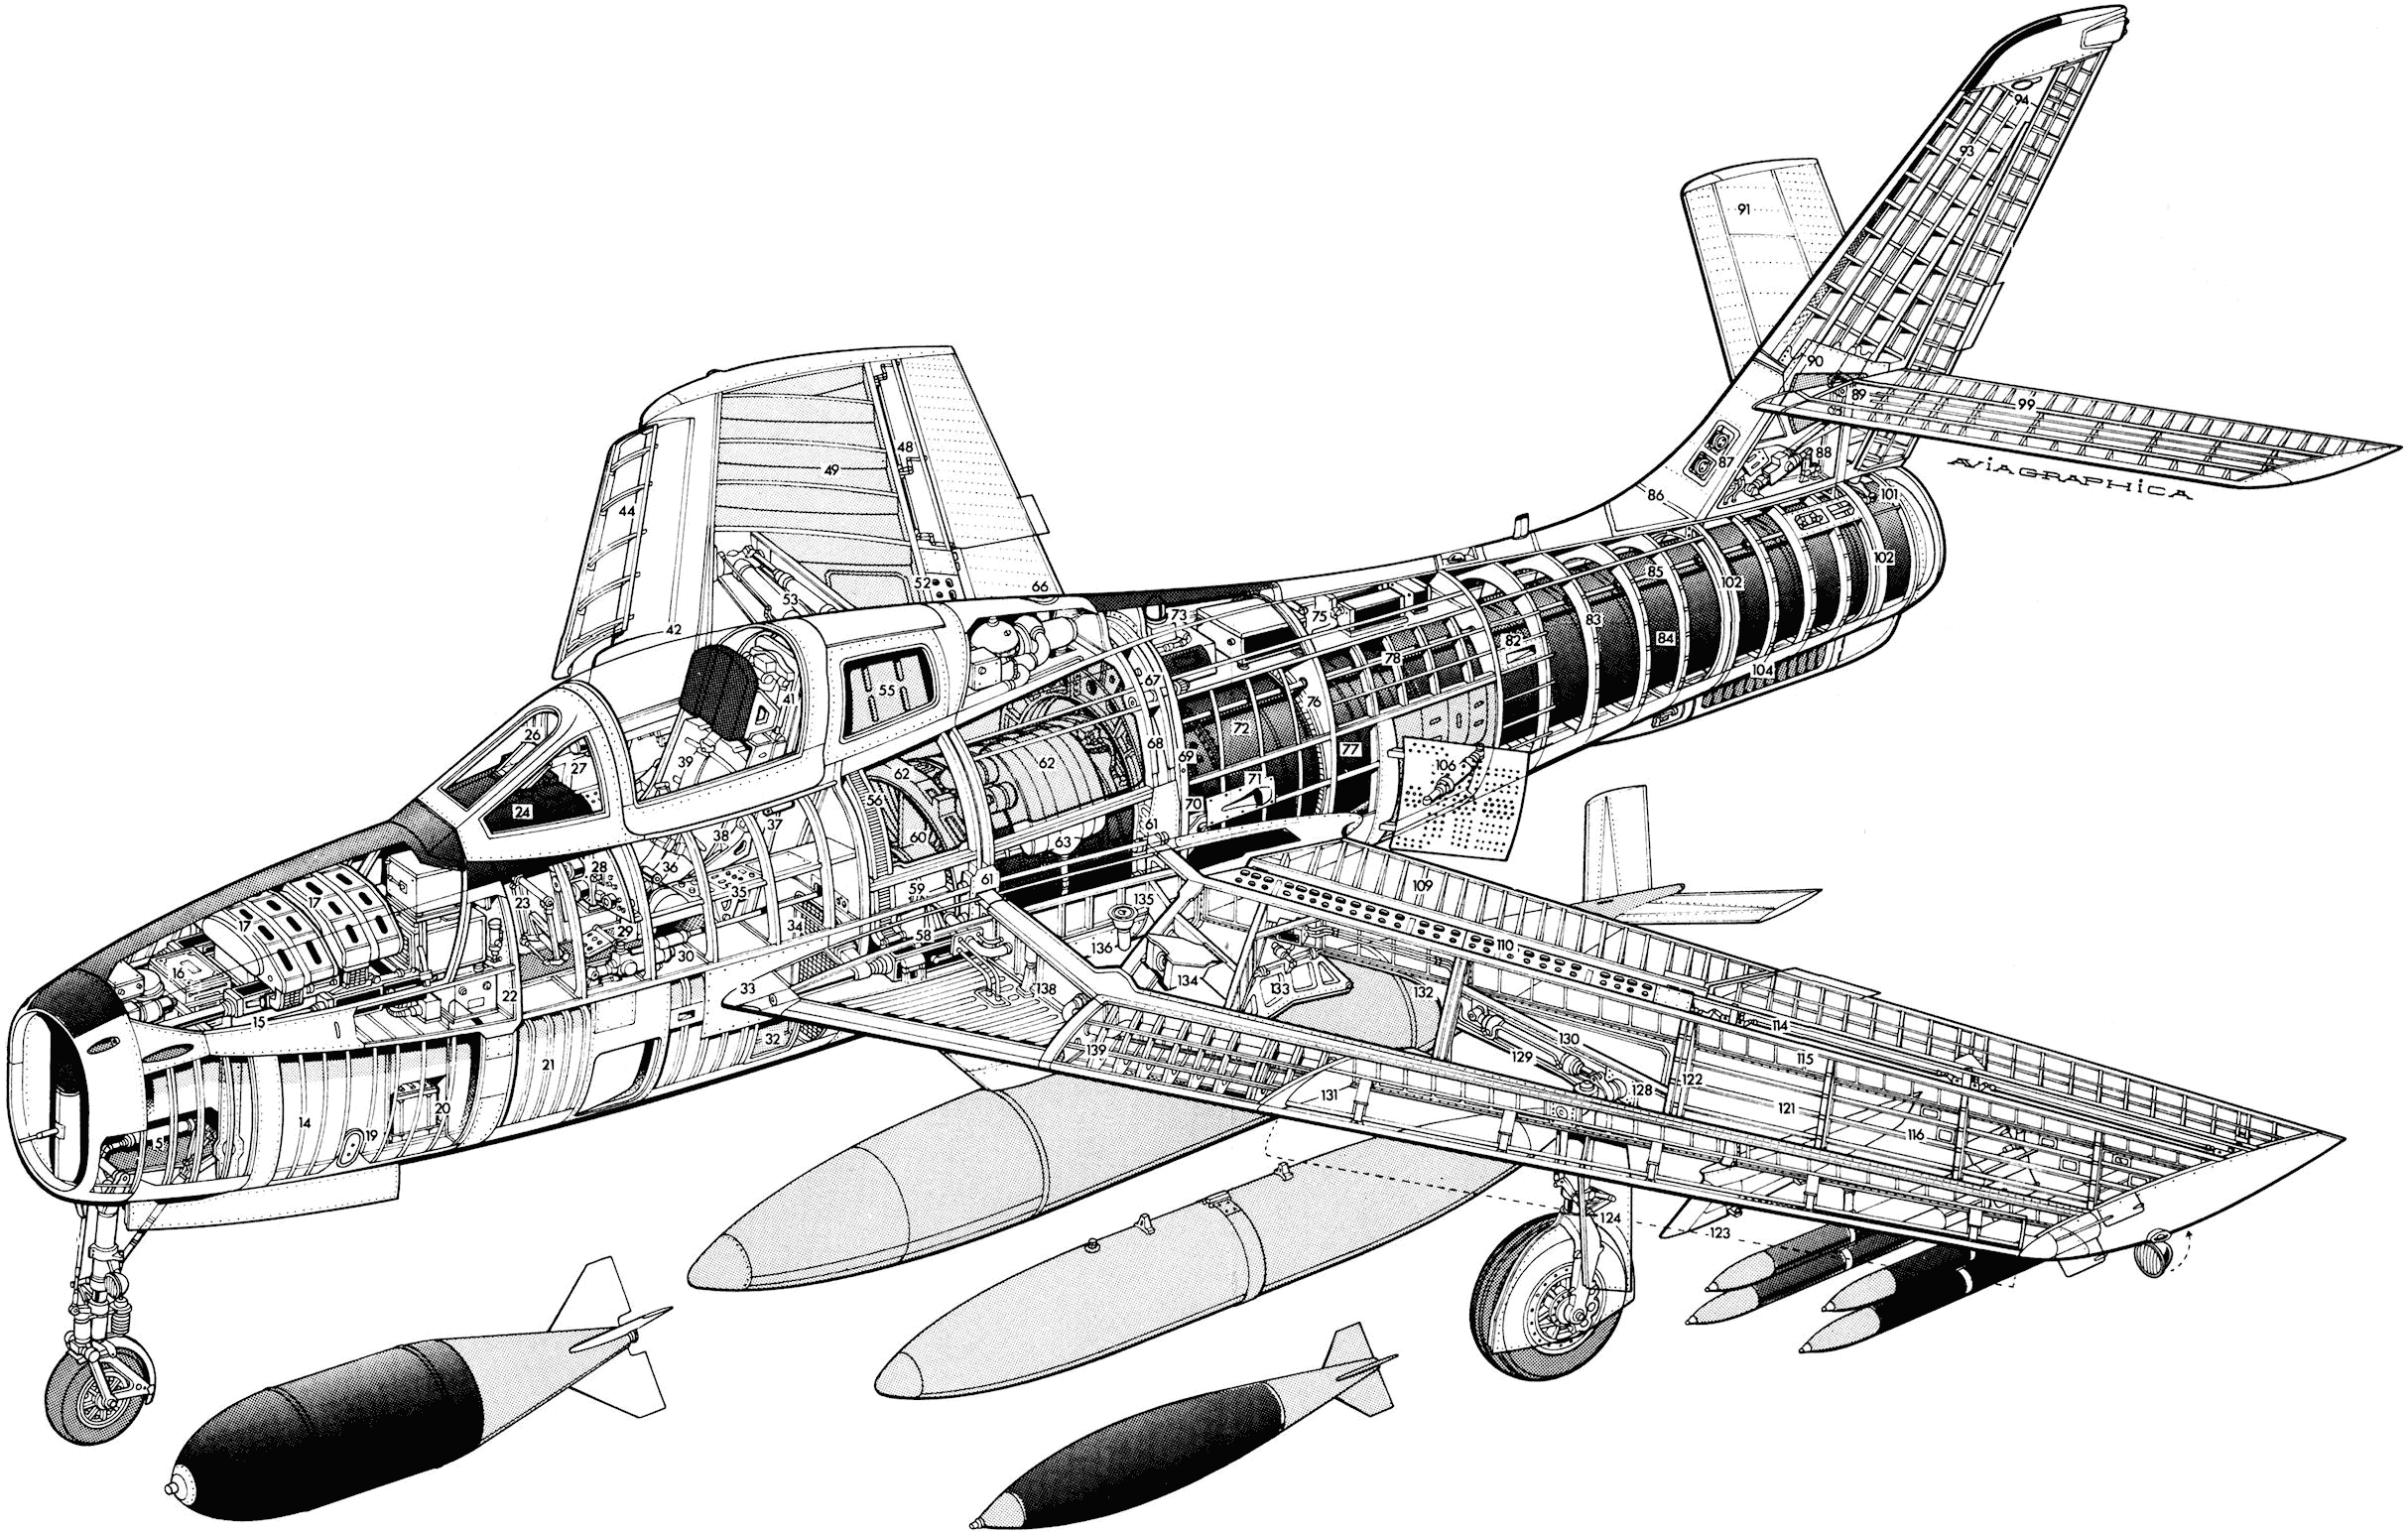 Republic F-84F Thunderstreak cutaway